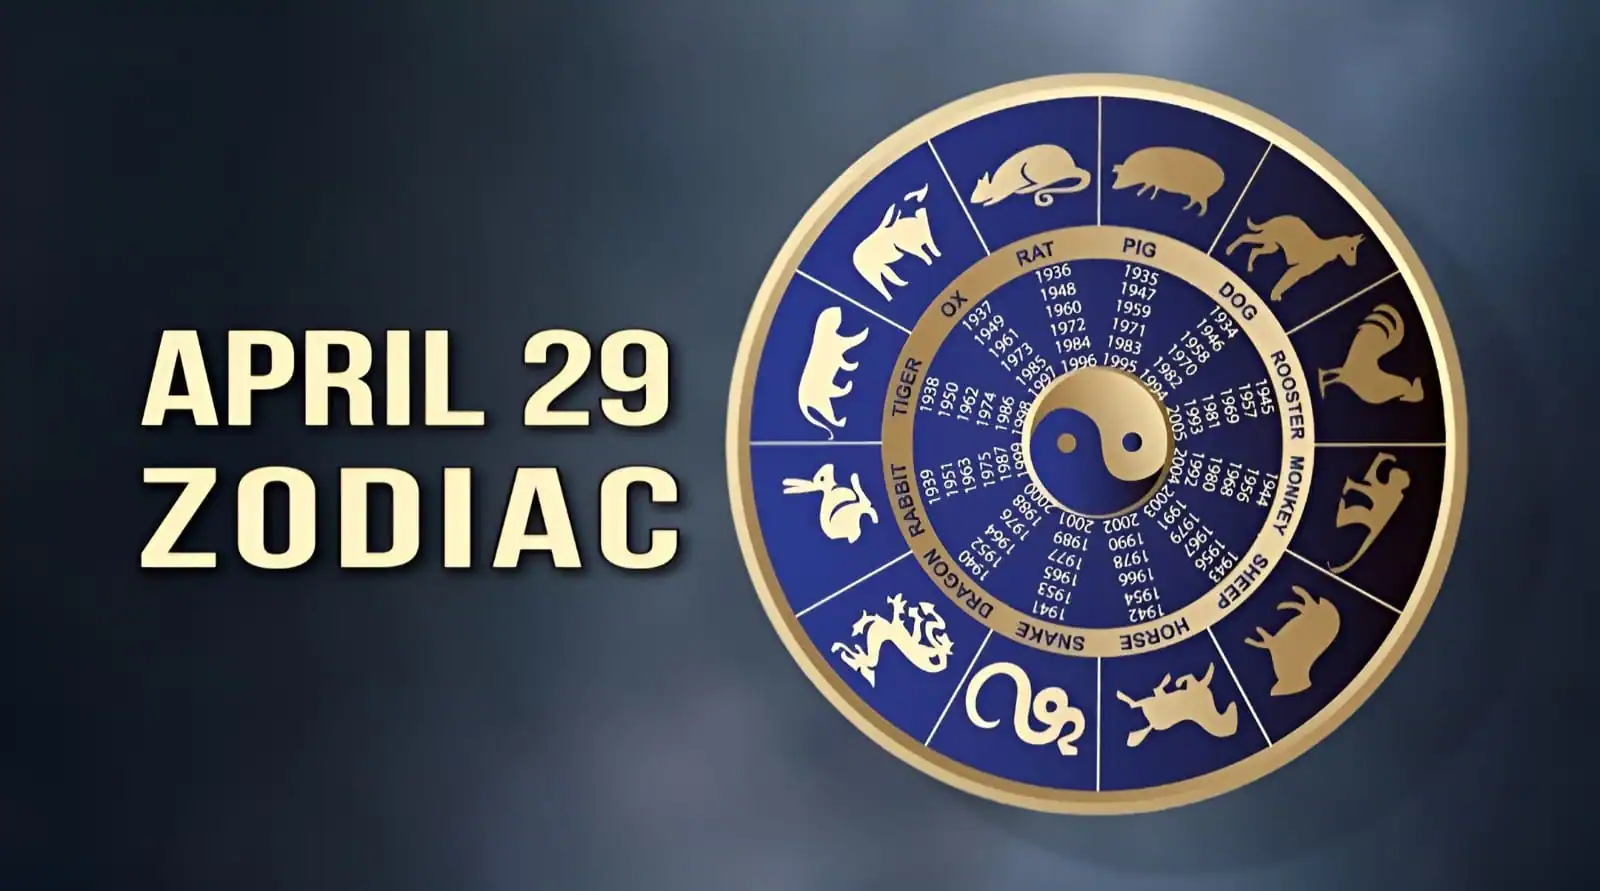 April 29 Zodiac